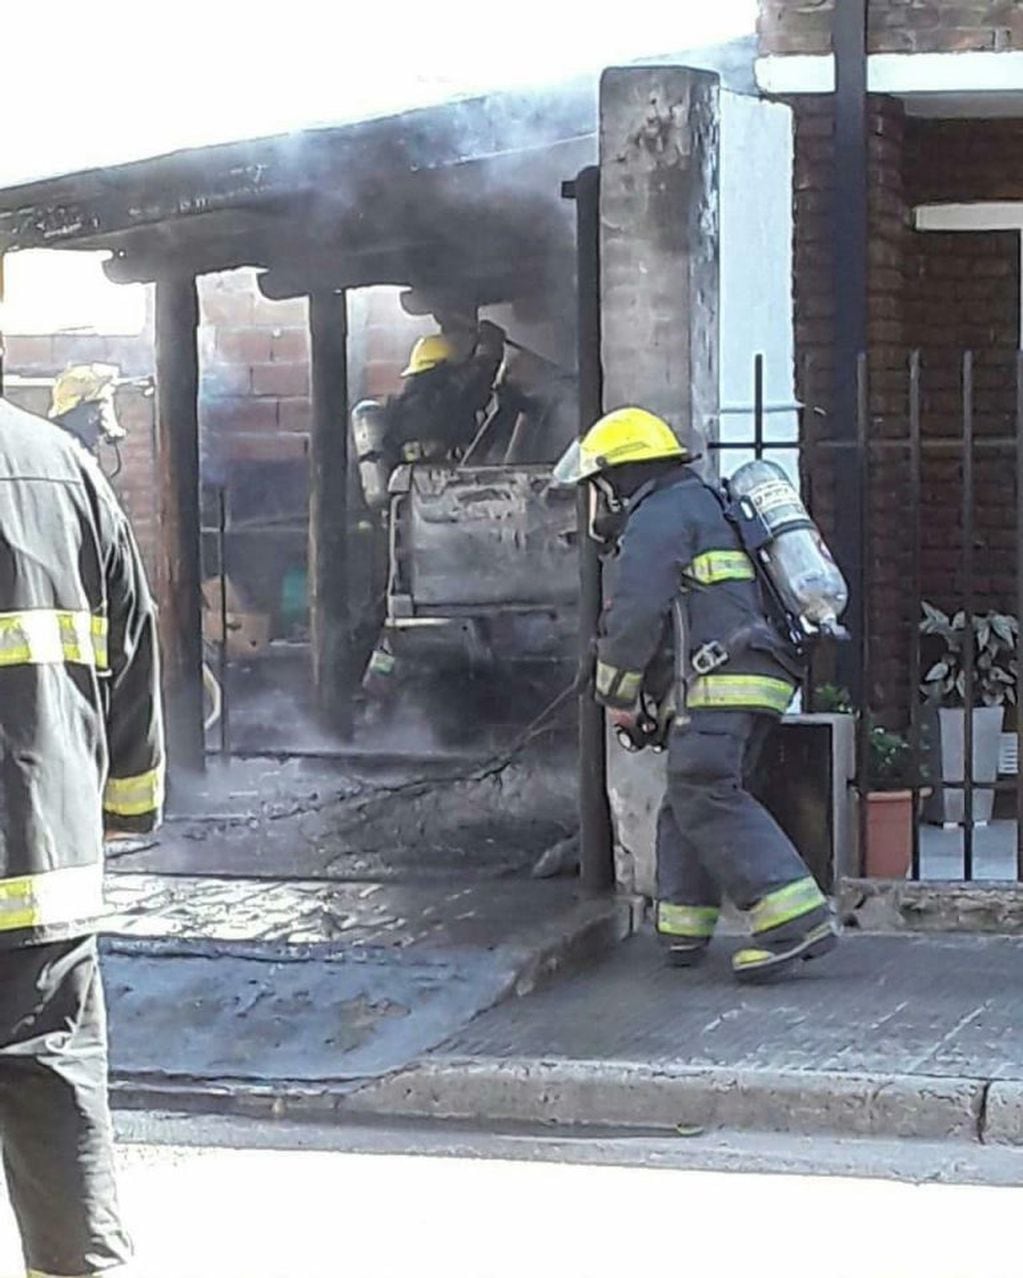 Incendio de camioneta en Gualeguaychú
Crédito: Todo Gualeguaychú